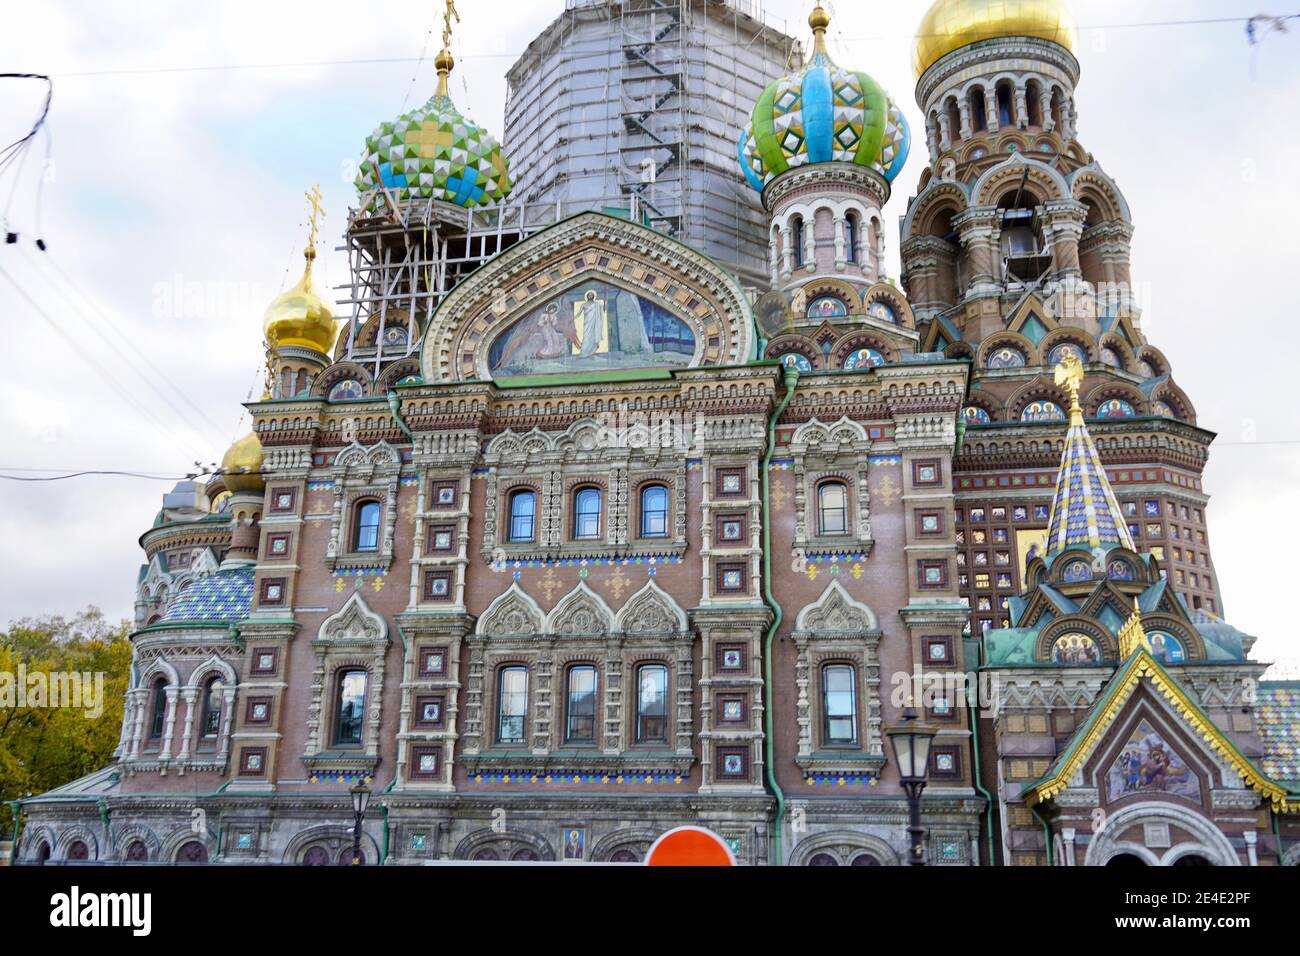 Chiesa del nostro Salvatore sul sangue versato o Resurrezione di Cristo Spas-na-krovi - San Pietroburgo, Russia. Foto di alta qualità Foto Stock